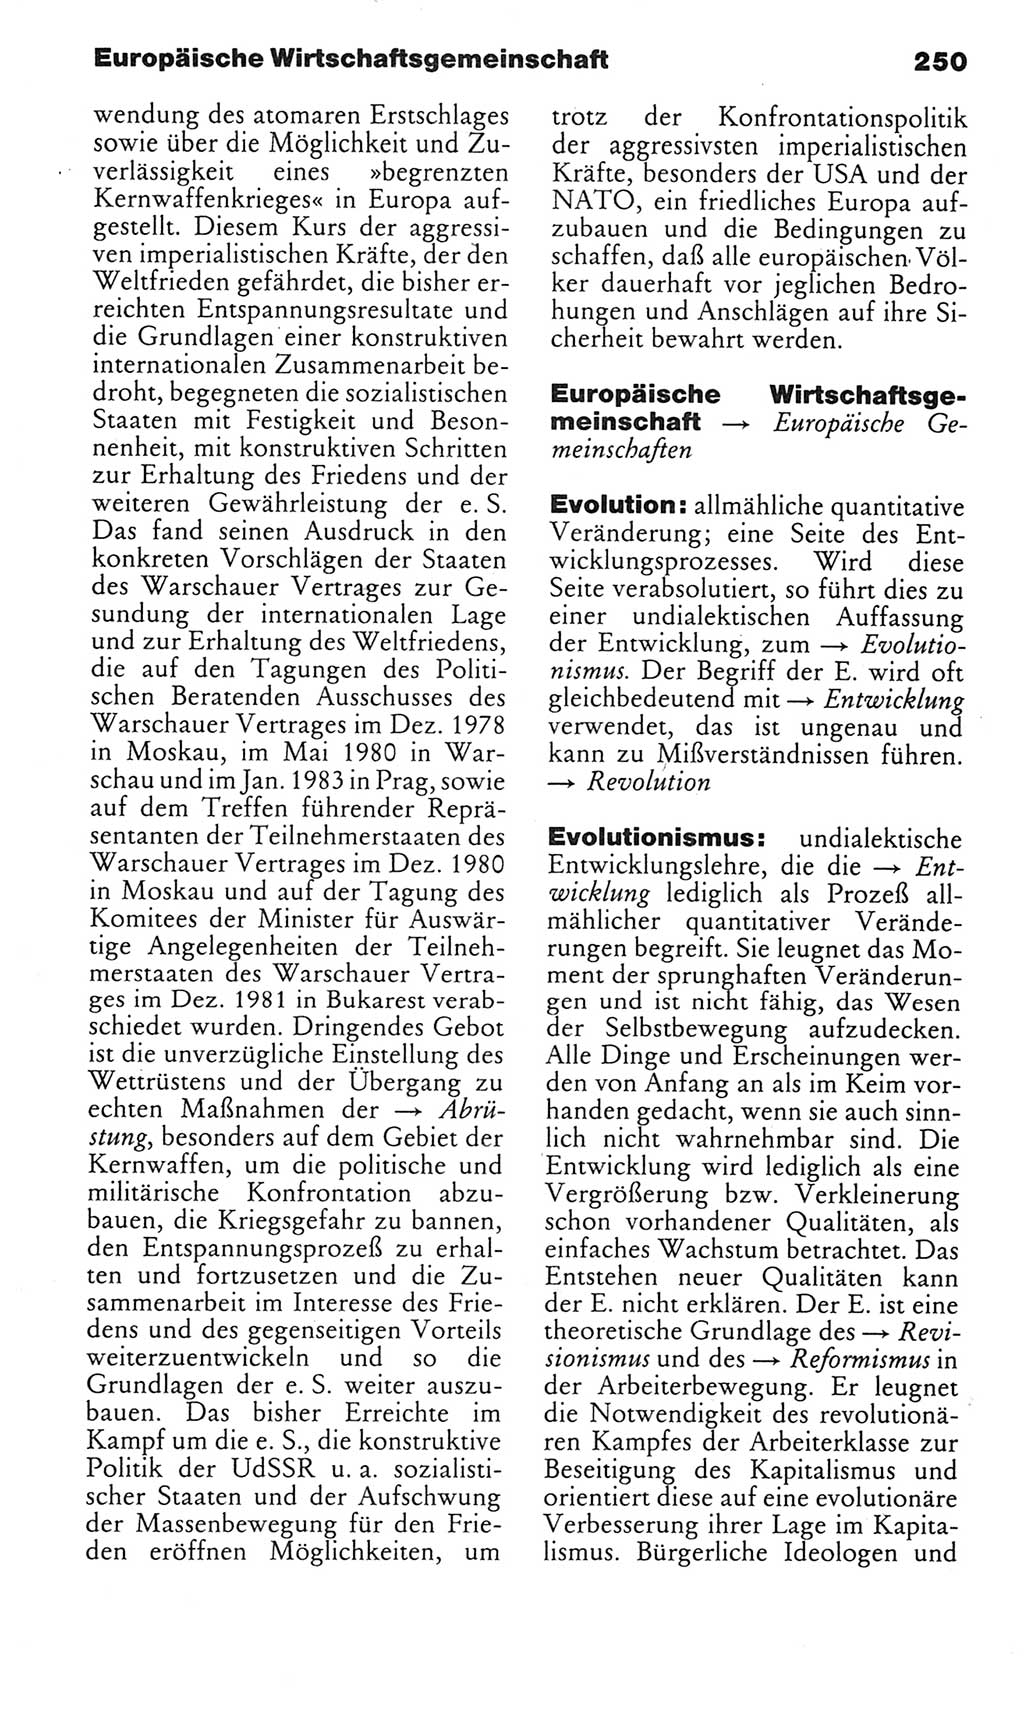 Kleines politisches Wörterbuch [Deutsche Demokratische Republik (DDR)] 1985, Seite 250 (Kl. pol. Wb. DDR 1985, S. 250)